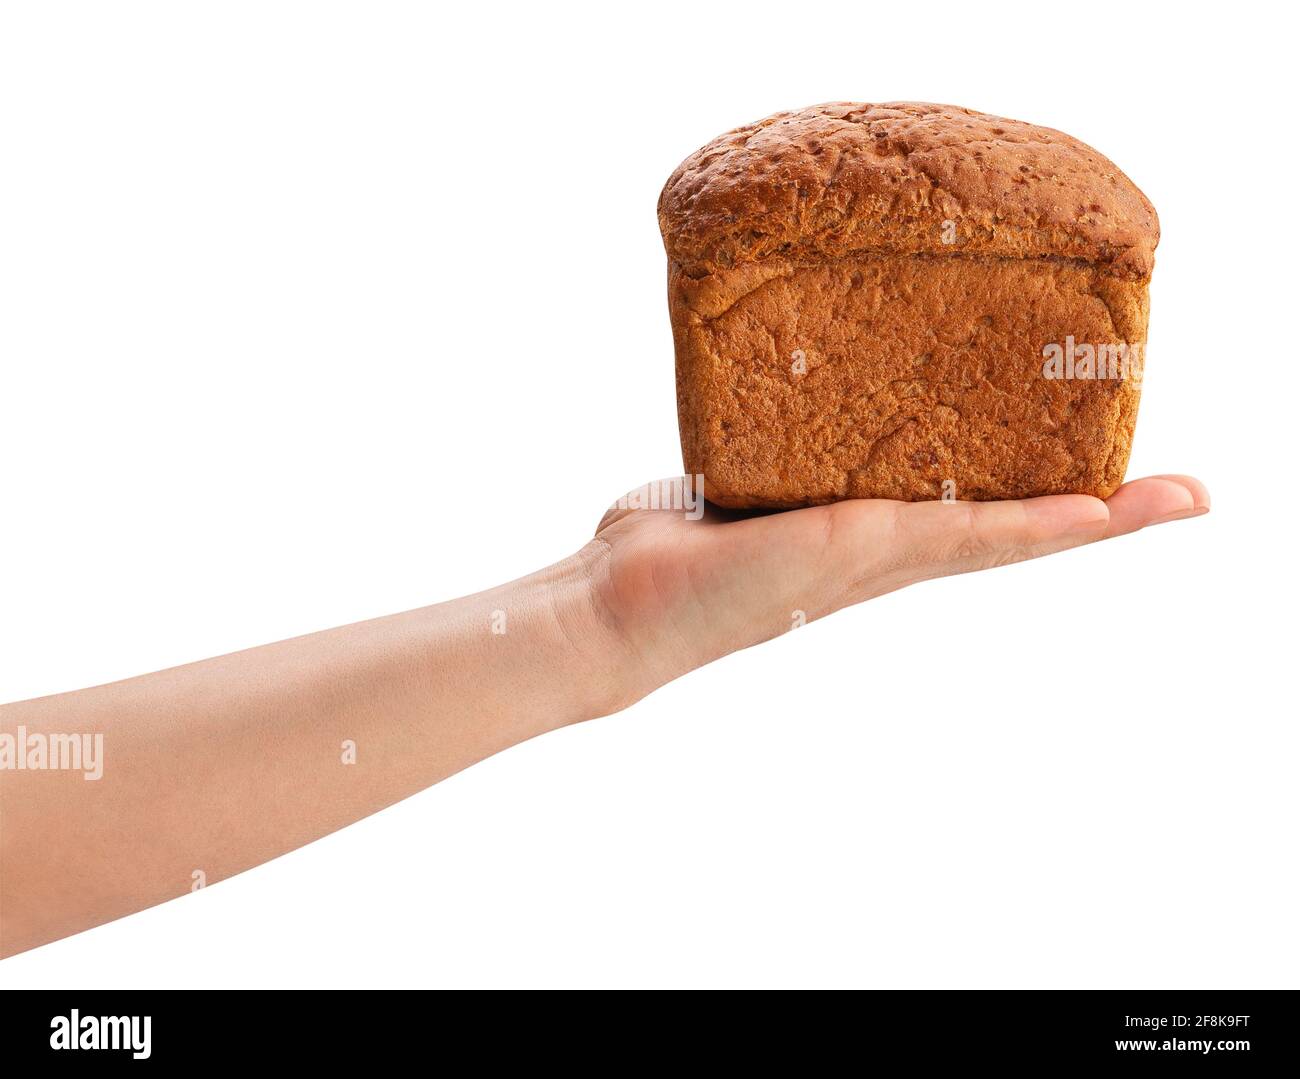 Le pain brun dans la main chemin isolated on white Banque D'Images